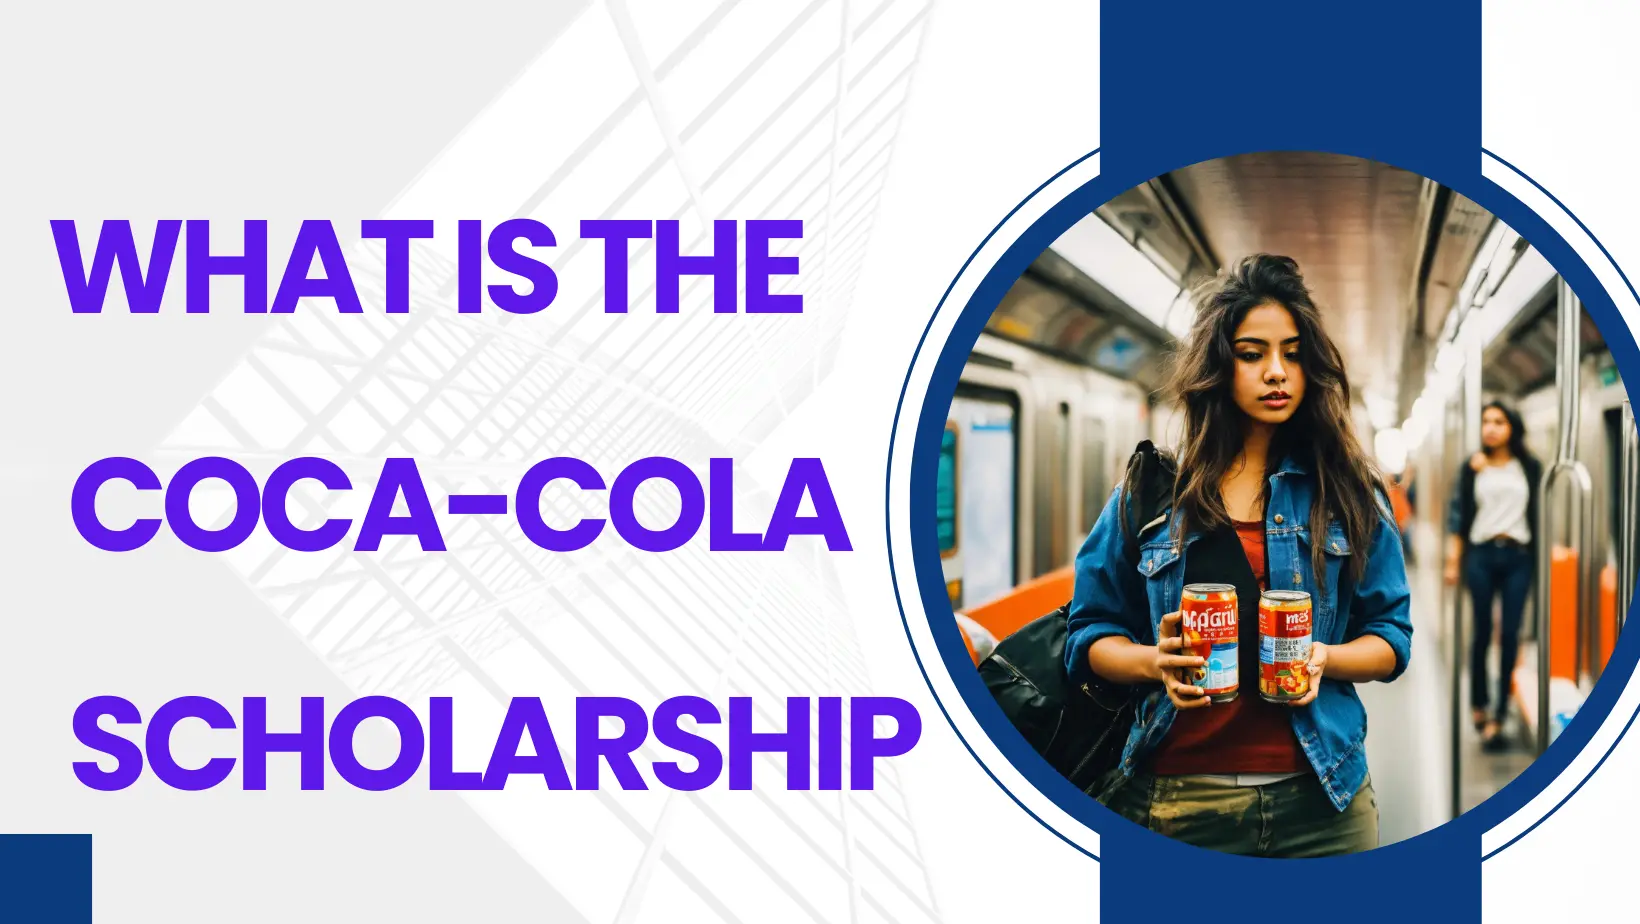 Coca-Cola scholarship